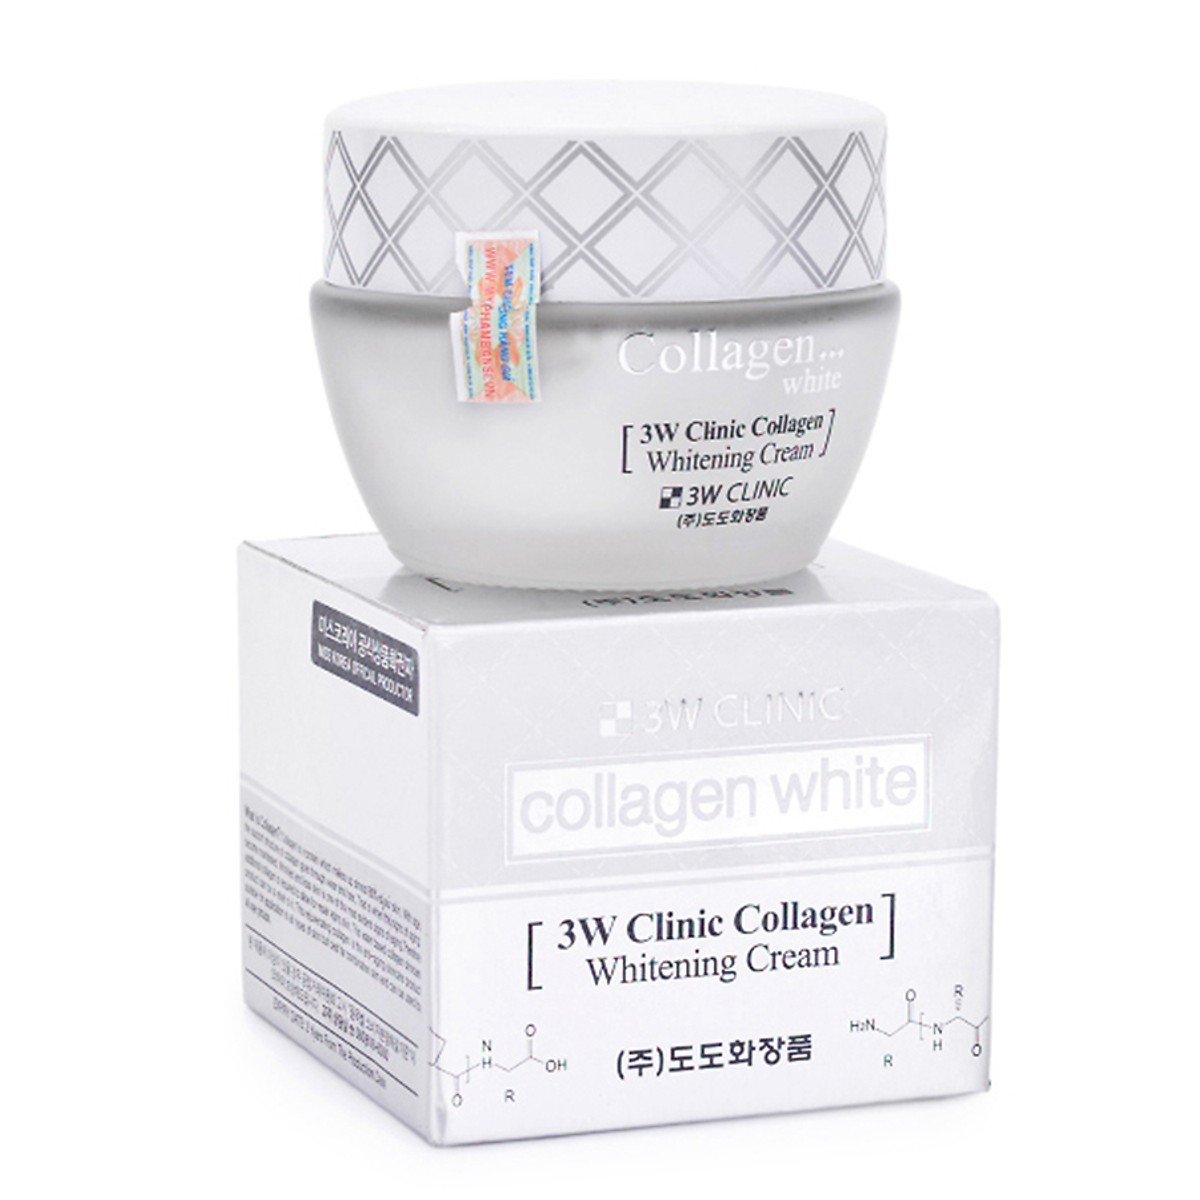 Kem Dưỡng Trắng Da Và Tái Tạo Da Tinh Chất Collagen 3W Clinic Collagen Whitening Cream 60ml - Hàn Quốc Chính Hãng